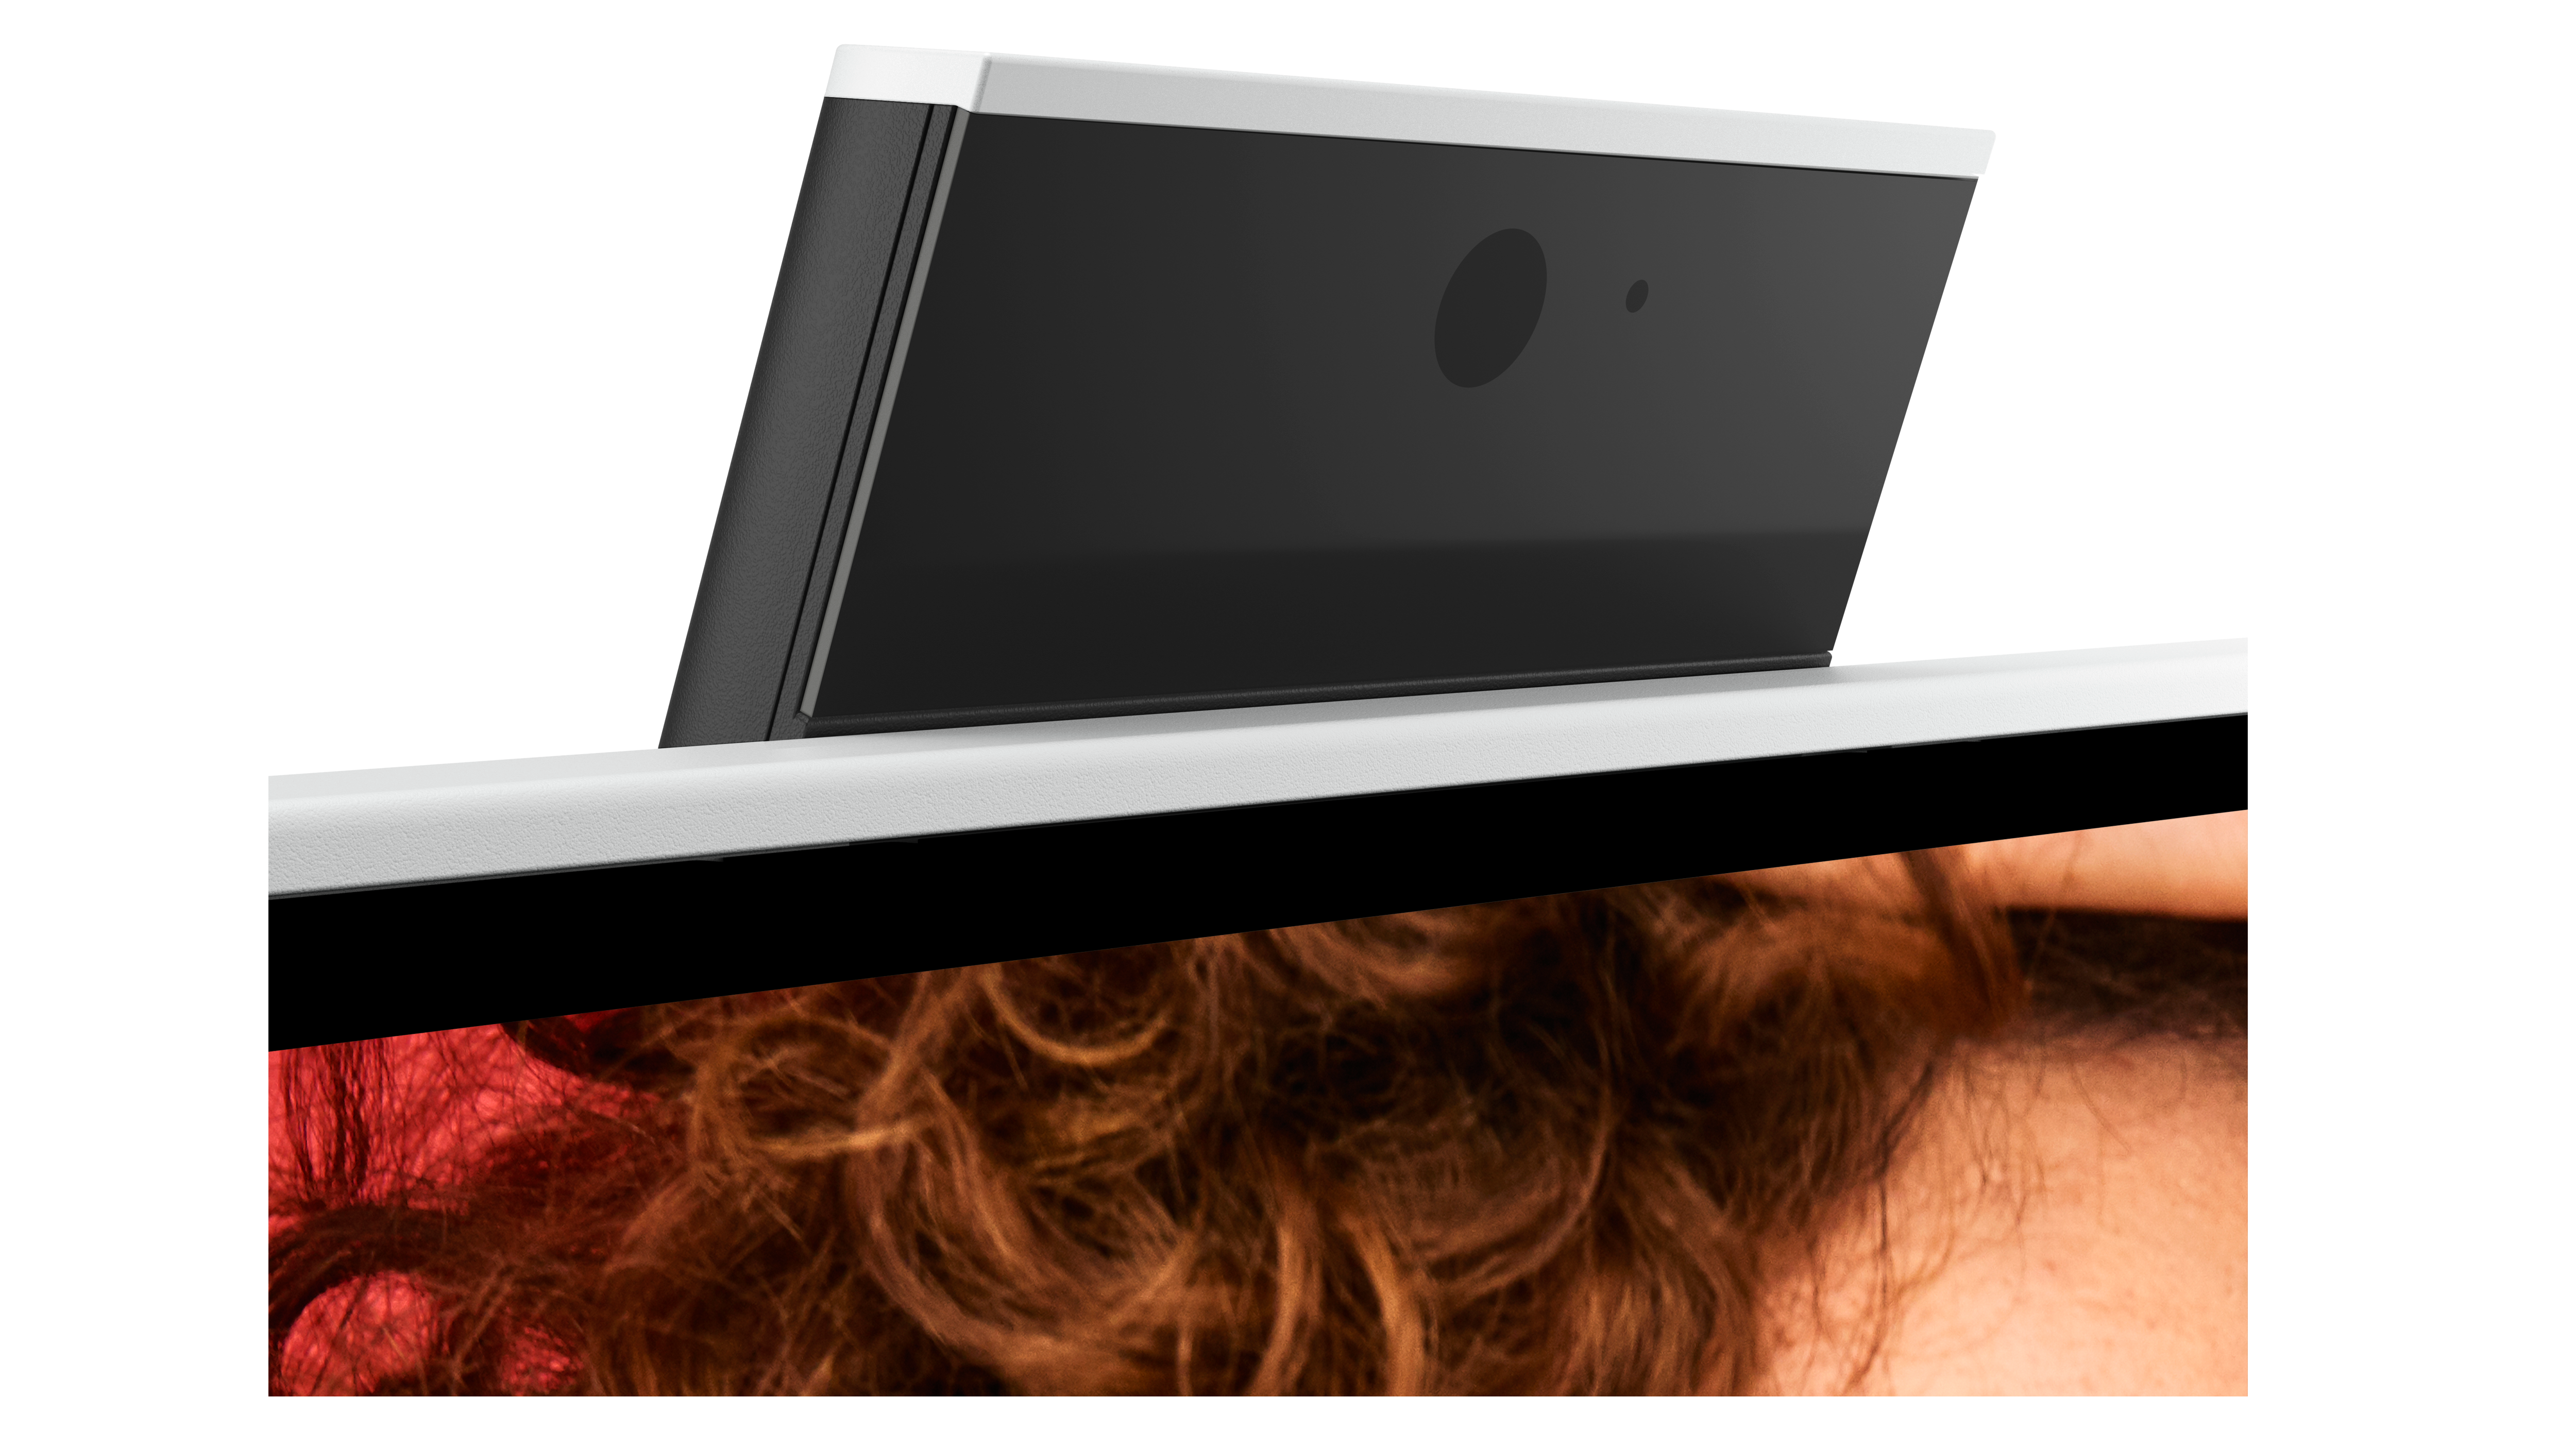 Photo d’un écran tout-en-un Dell Inspiron 24 5415 centrée sur la webcam disponible au-dessus du produit.